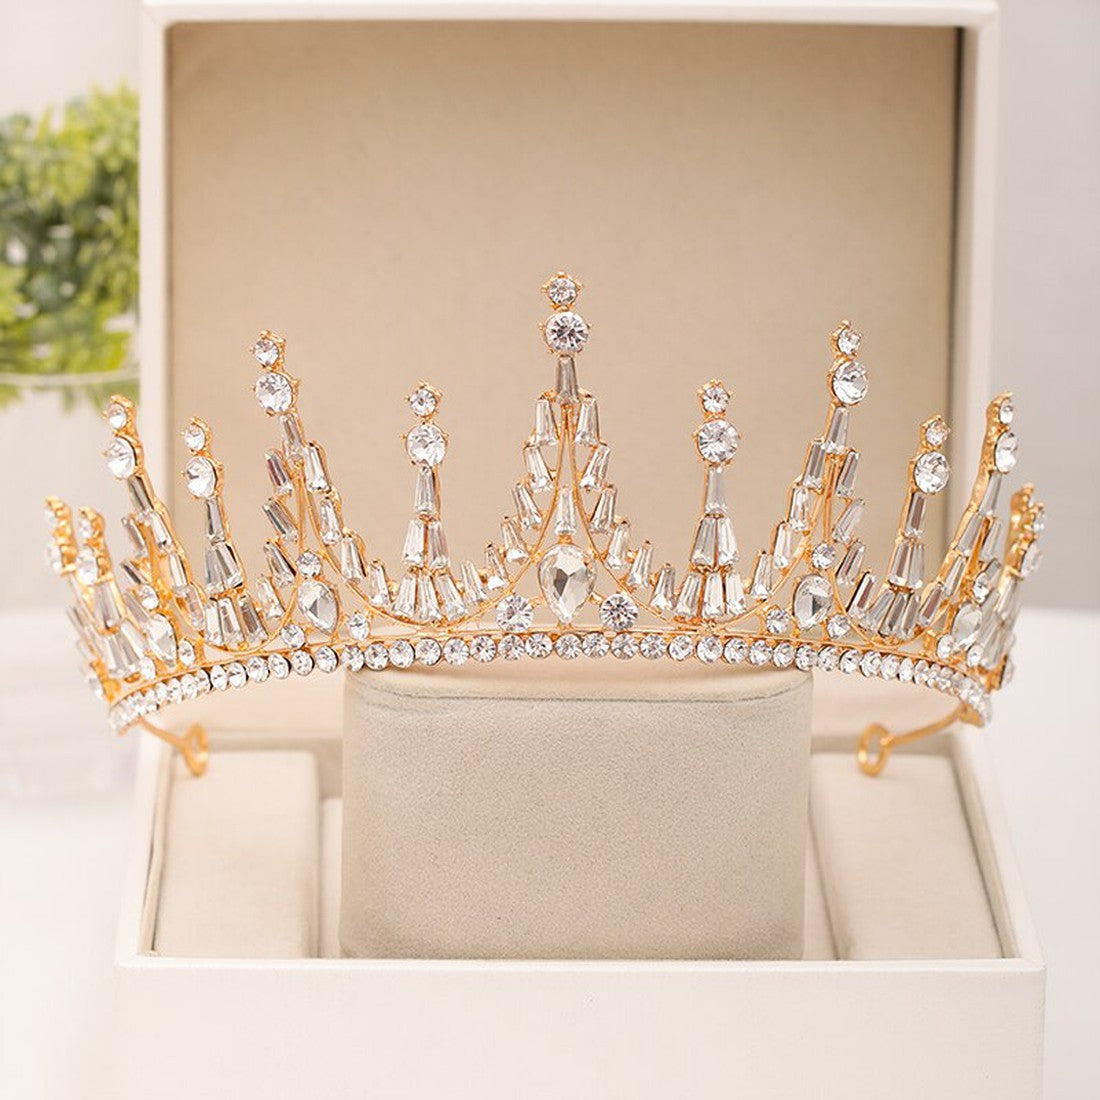 The New Wedding crown Woman Tiara Baroque crystal Rhinestone ornaments Wedding Bridal Crowns